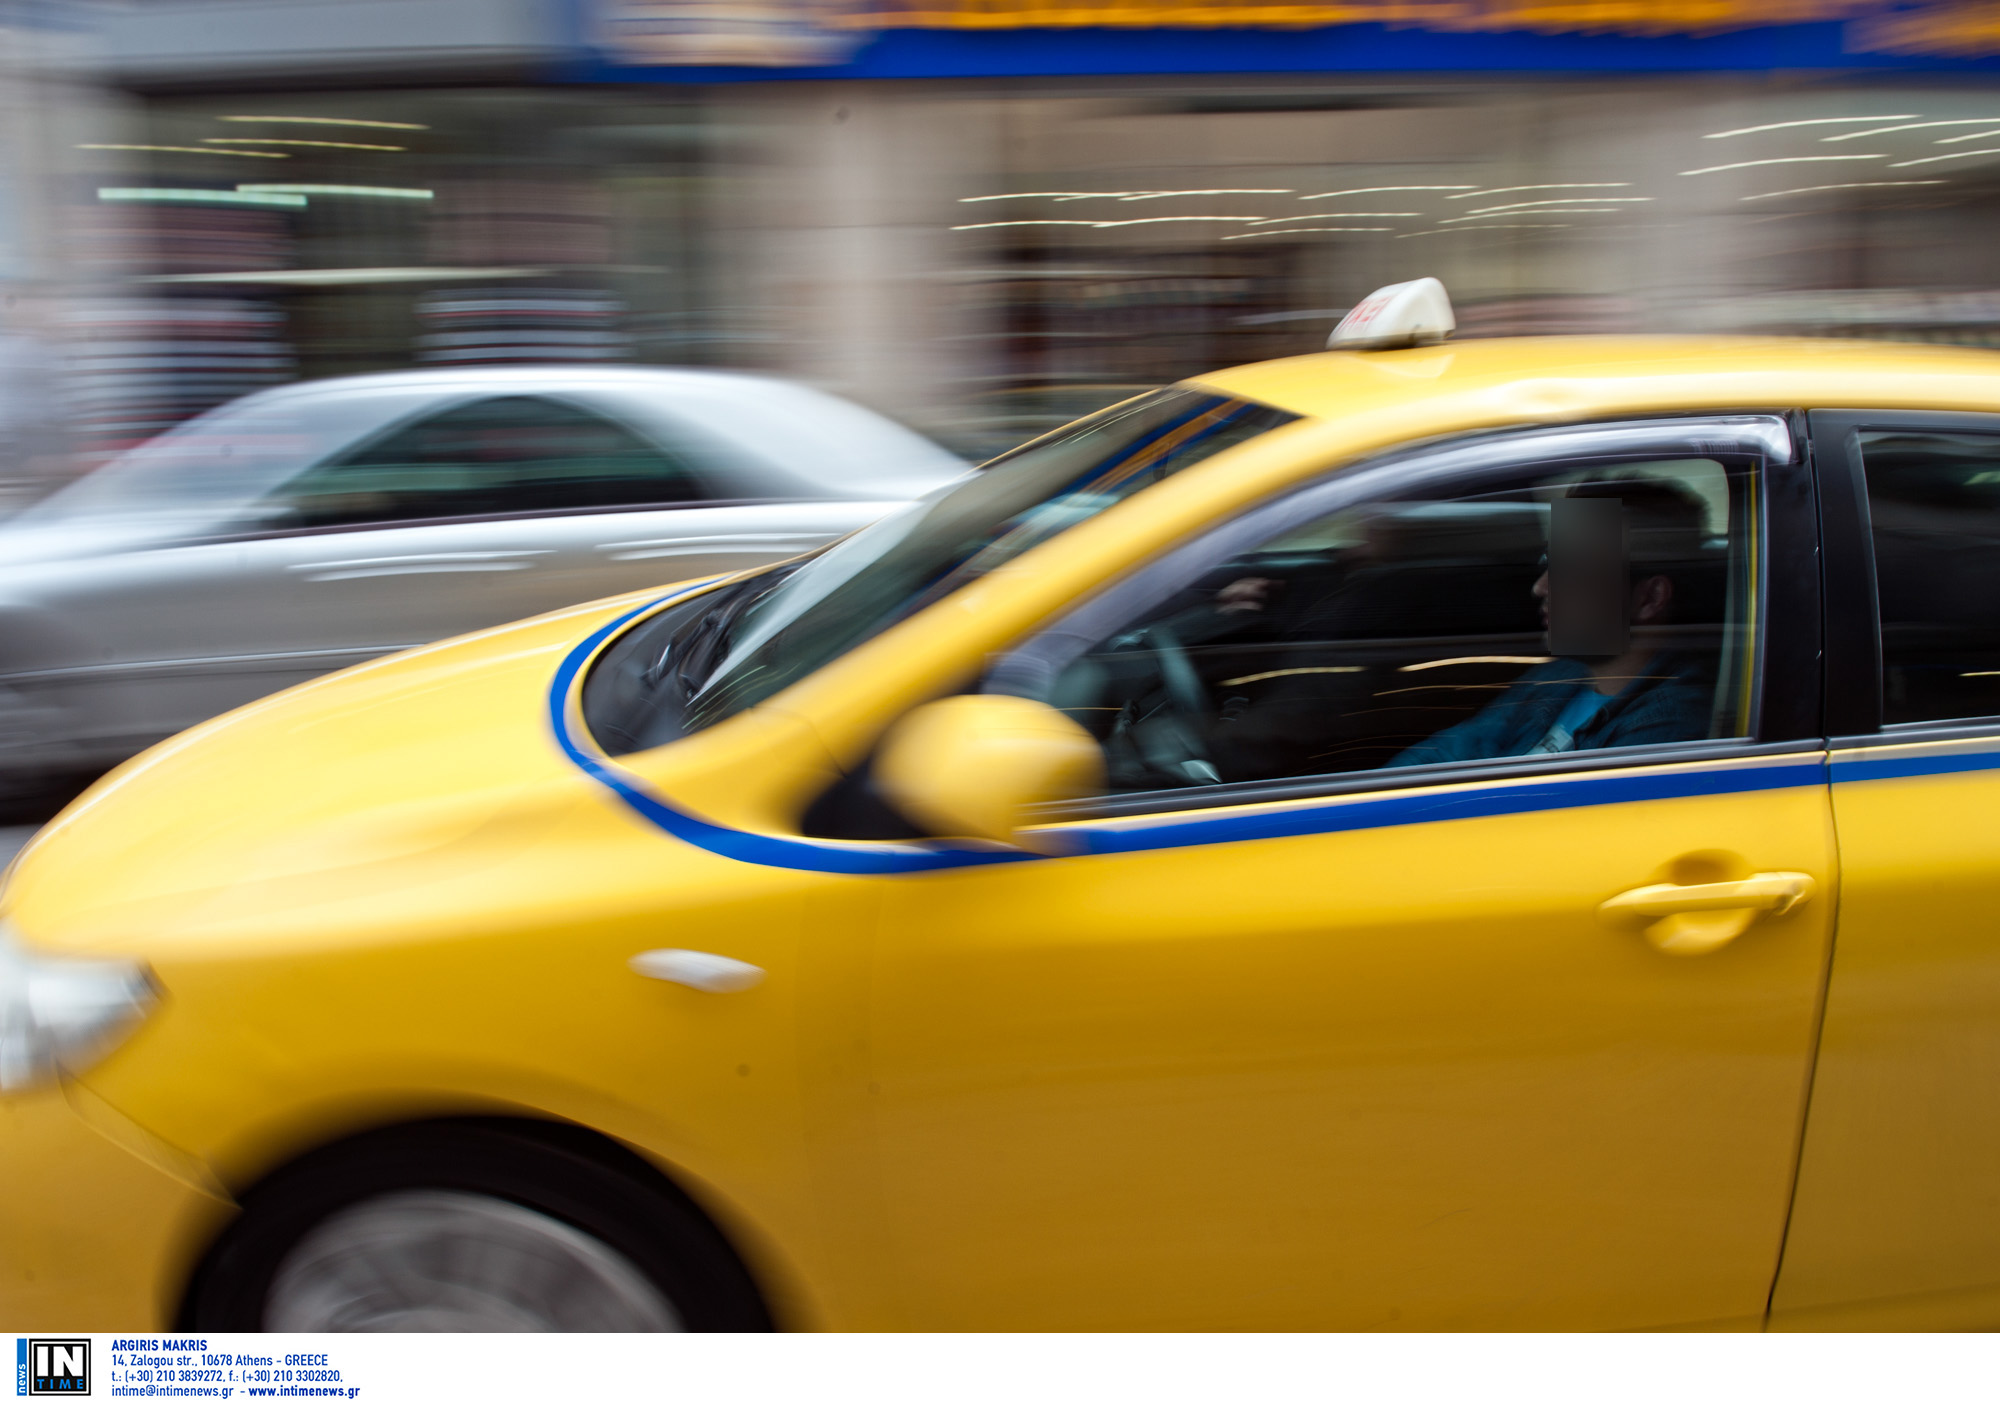 Γιατί τα ταξί έχουν μια μπλε λωρίδα υποχρεωτικά στο πλάι